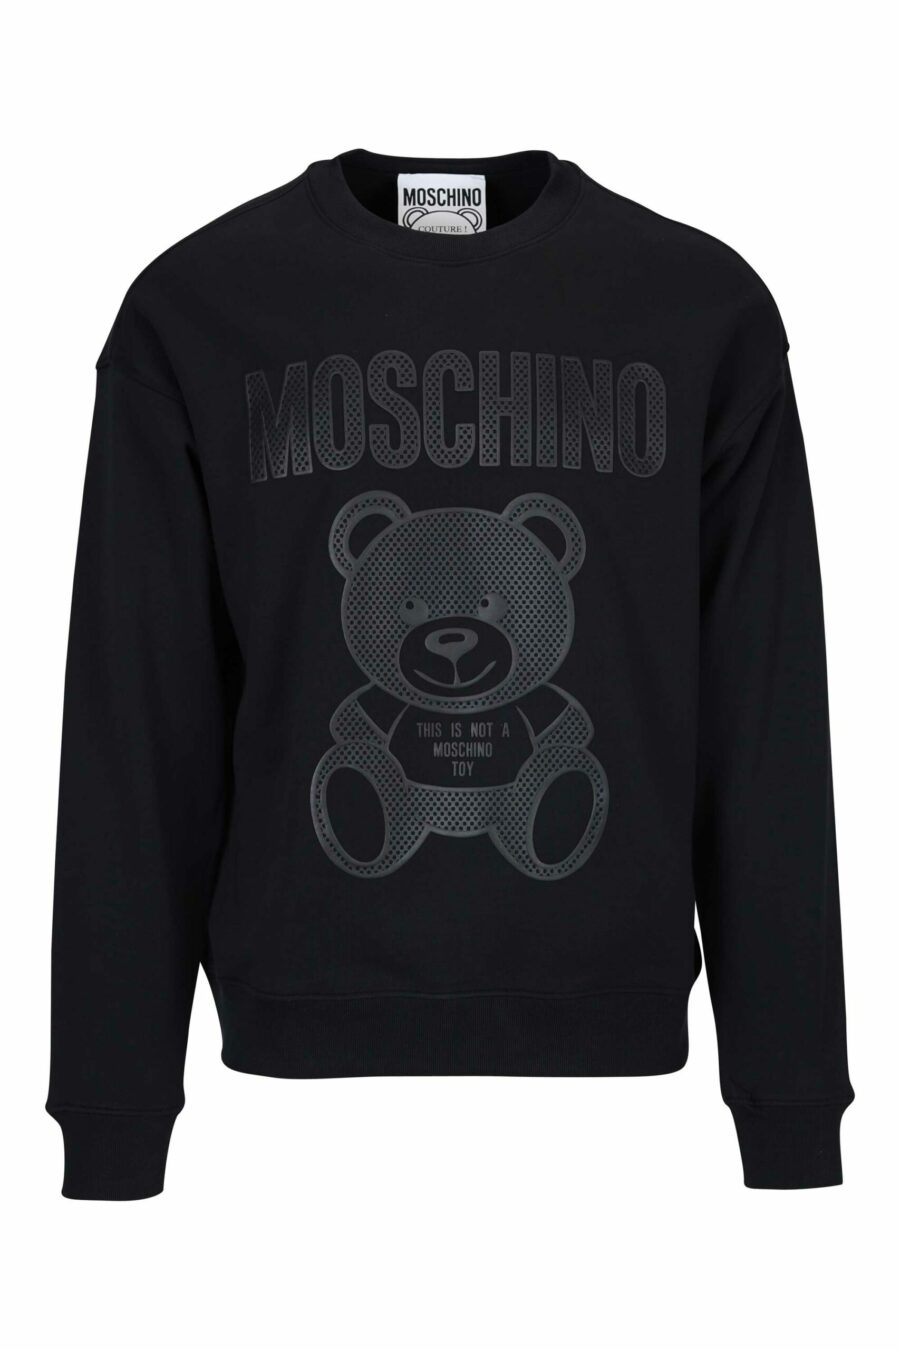 Schwarzes Sweatshirt mit einfarbig gepunktetem Bären-Maxilogo - 667113458274 skaliert